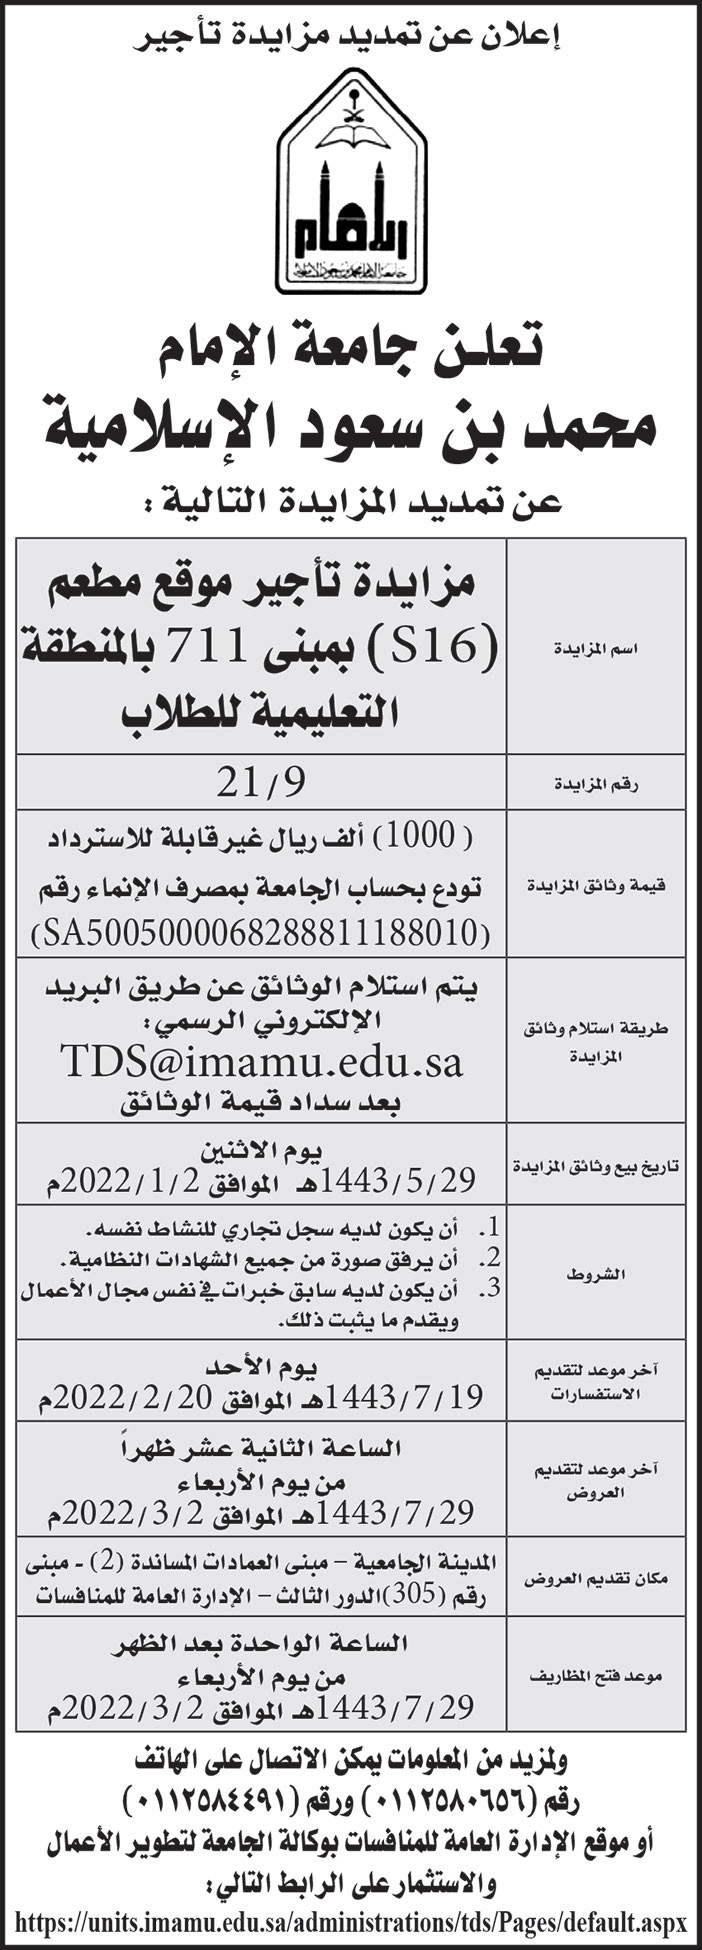 جامعة الإمام محمد بن سعود الإسلامية تمدد مزايدة تأجير موقع مطعم (S16) بمبنى 711 بالمنطقة التعليمية للطلاب 